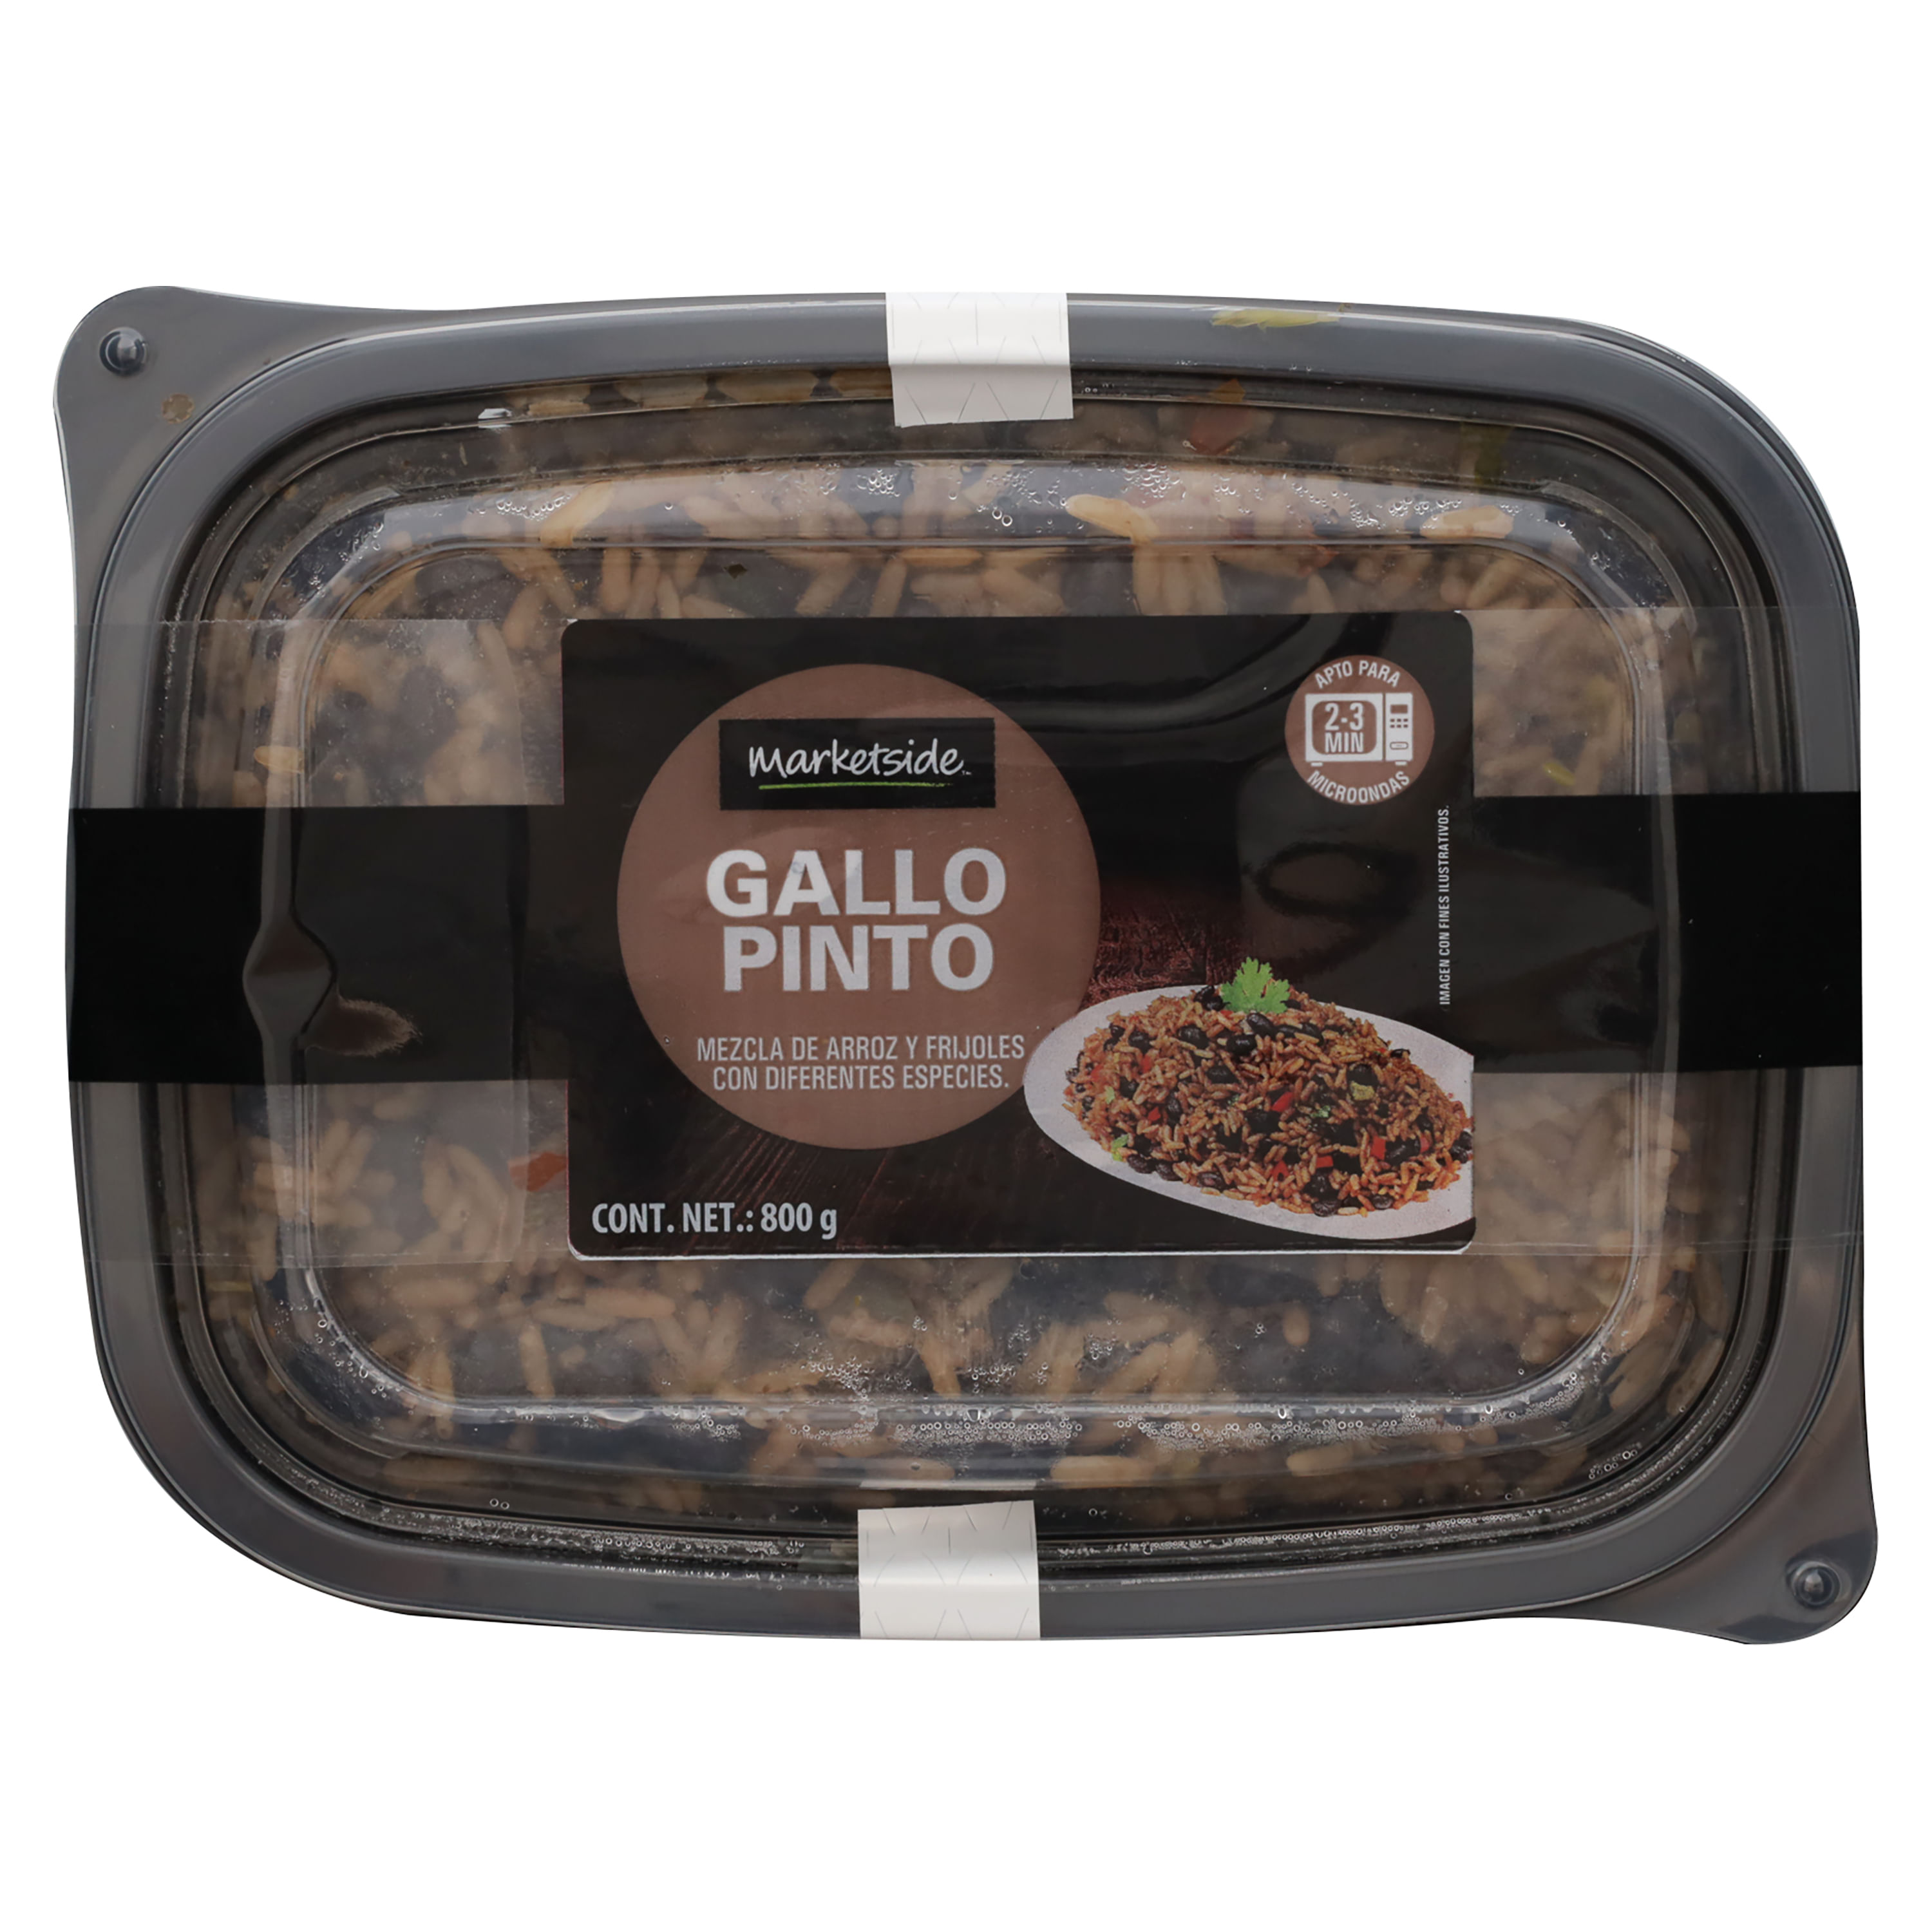 Gallo-Pinto-Marca-Marketside-Familiar-800gr-1-85363